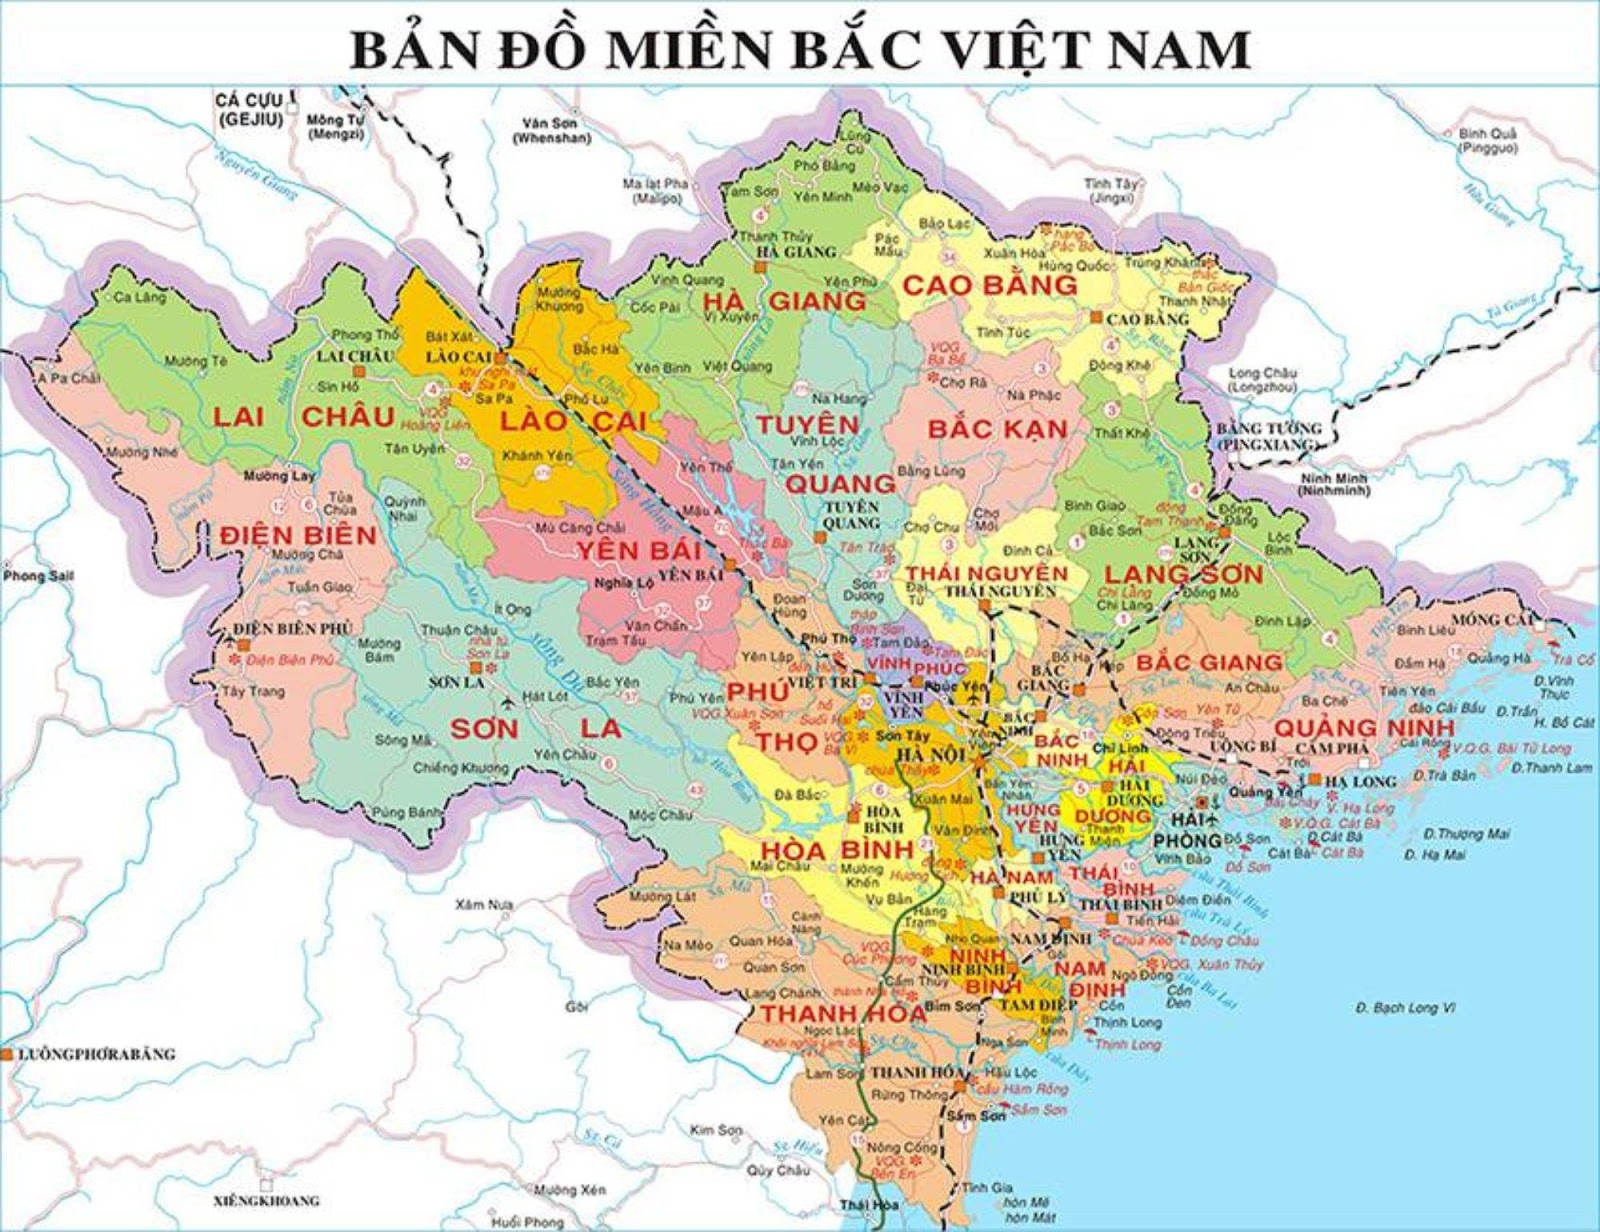 Bản đồ Miền Bắc Việt Nam: 
Nếu bạn muốn đi tìm hiểu về khung cảnh thiên nhiên đẹp ngất ngây của Miền Bắc, hãy dừng chân ngay tại đây. Xem qua tranh ảnh để tìm hiểu những nét đẹp tuyệt vời của vùng đất này.